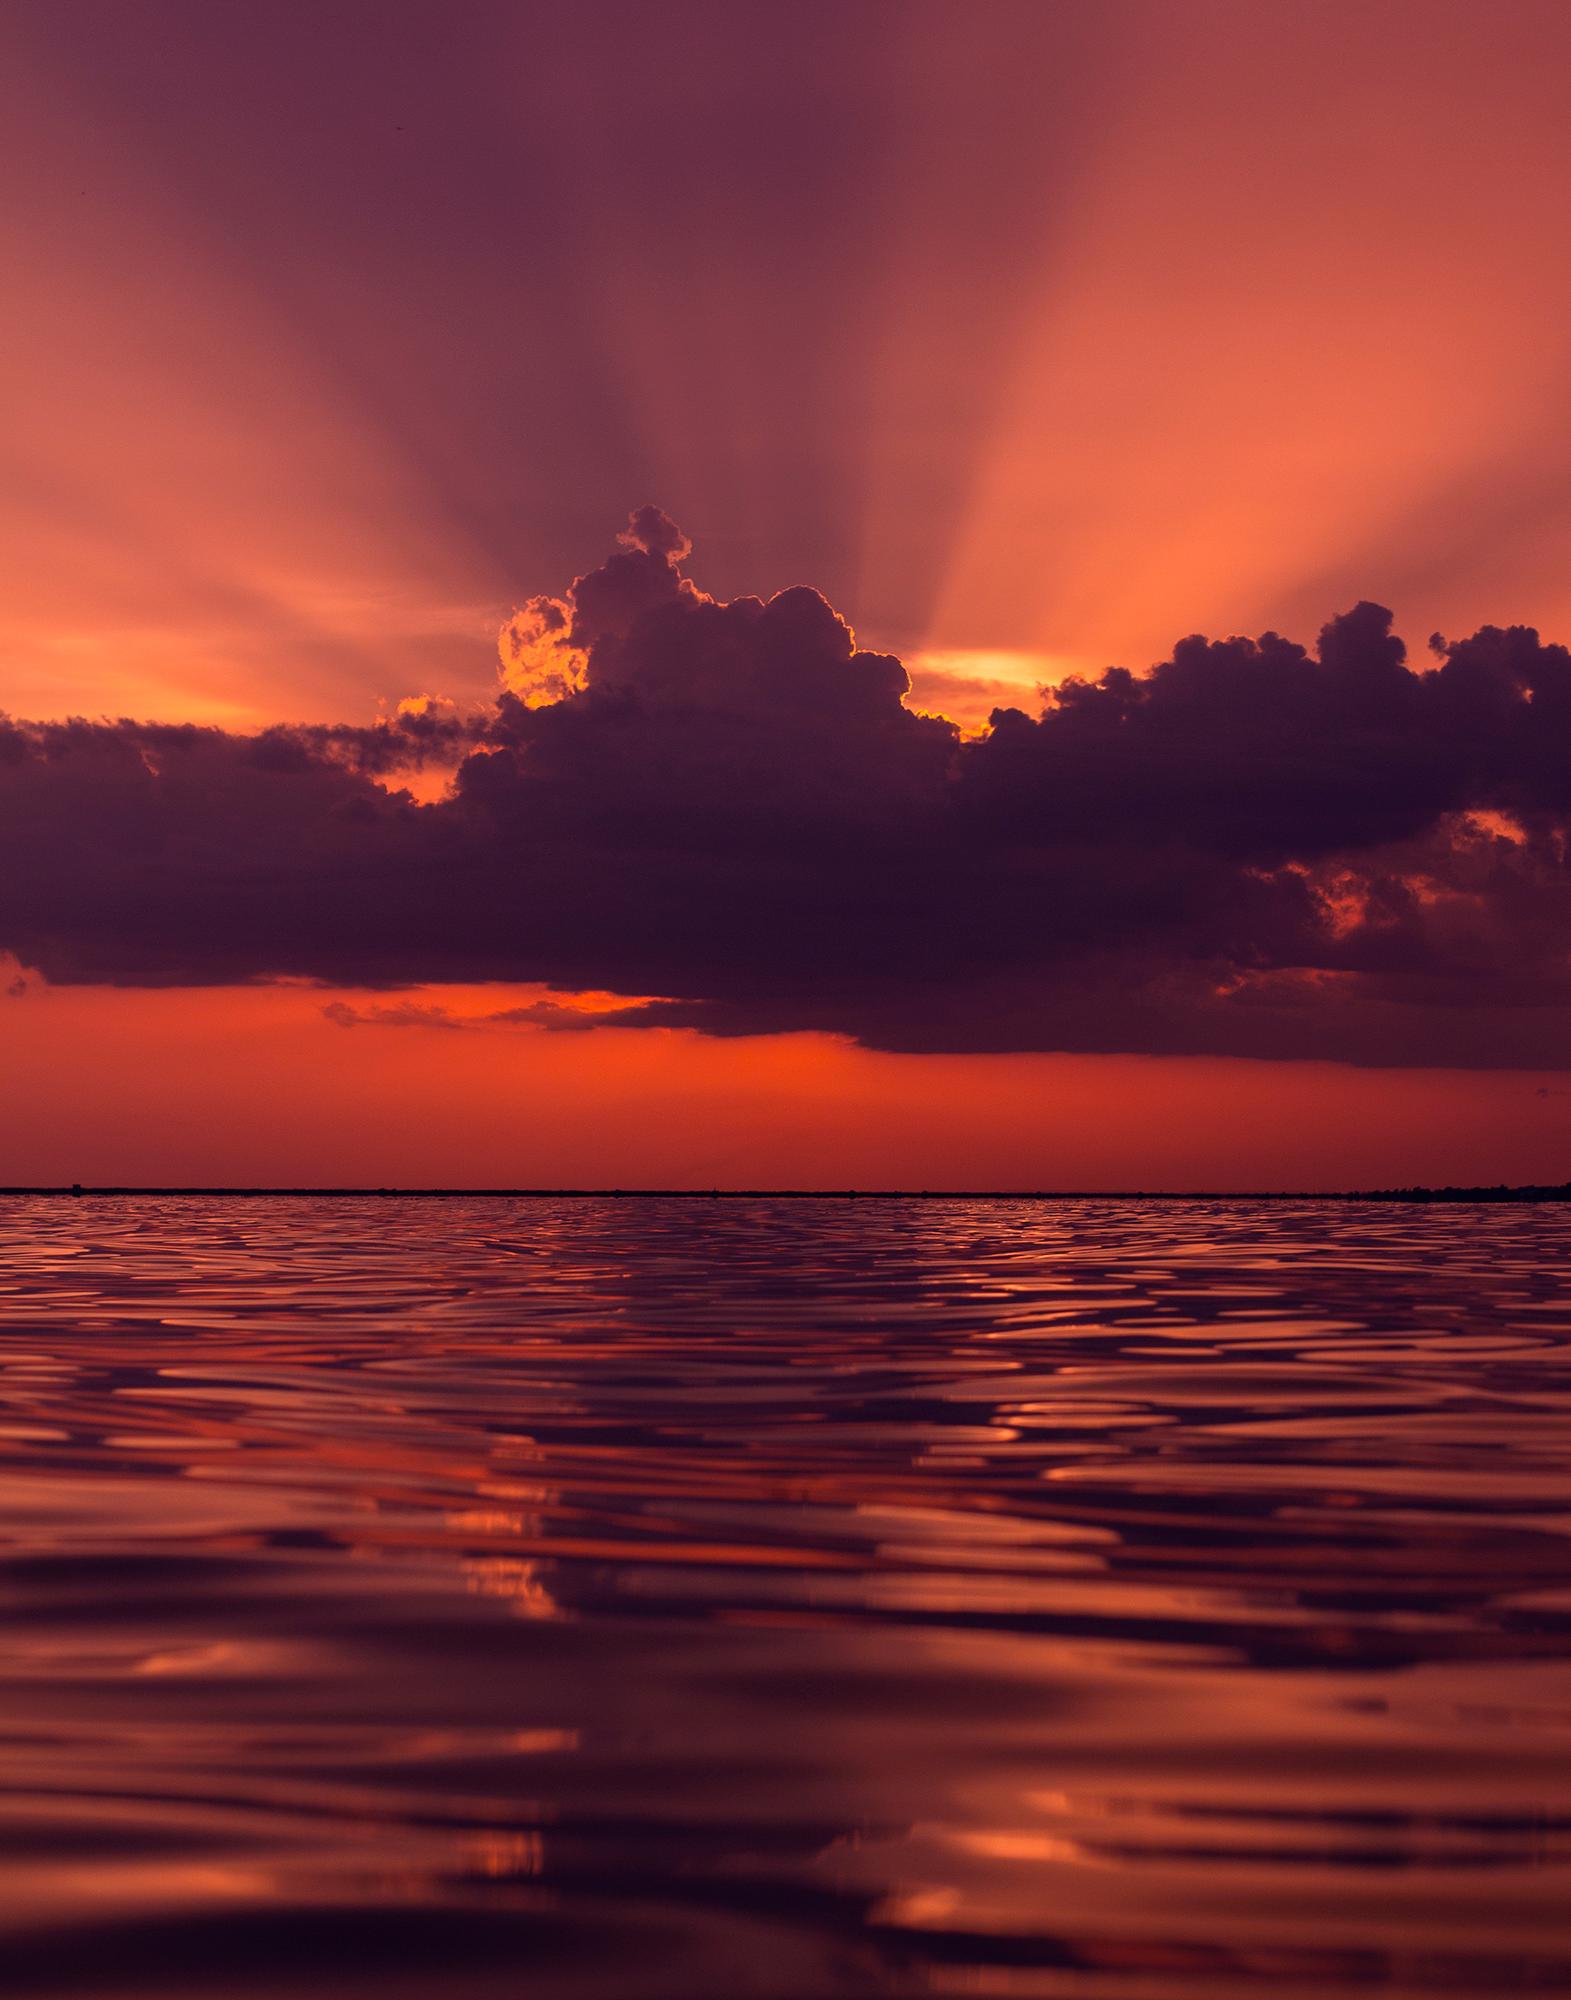 July 24th, Sunset on Lake Pontchartrain - Photograph by Jacob Mitchell